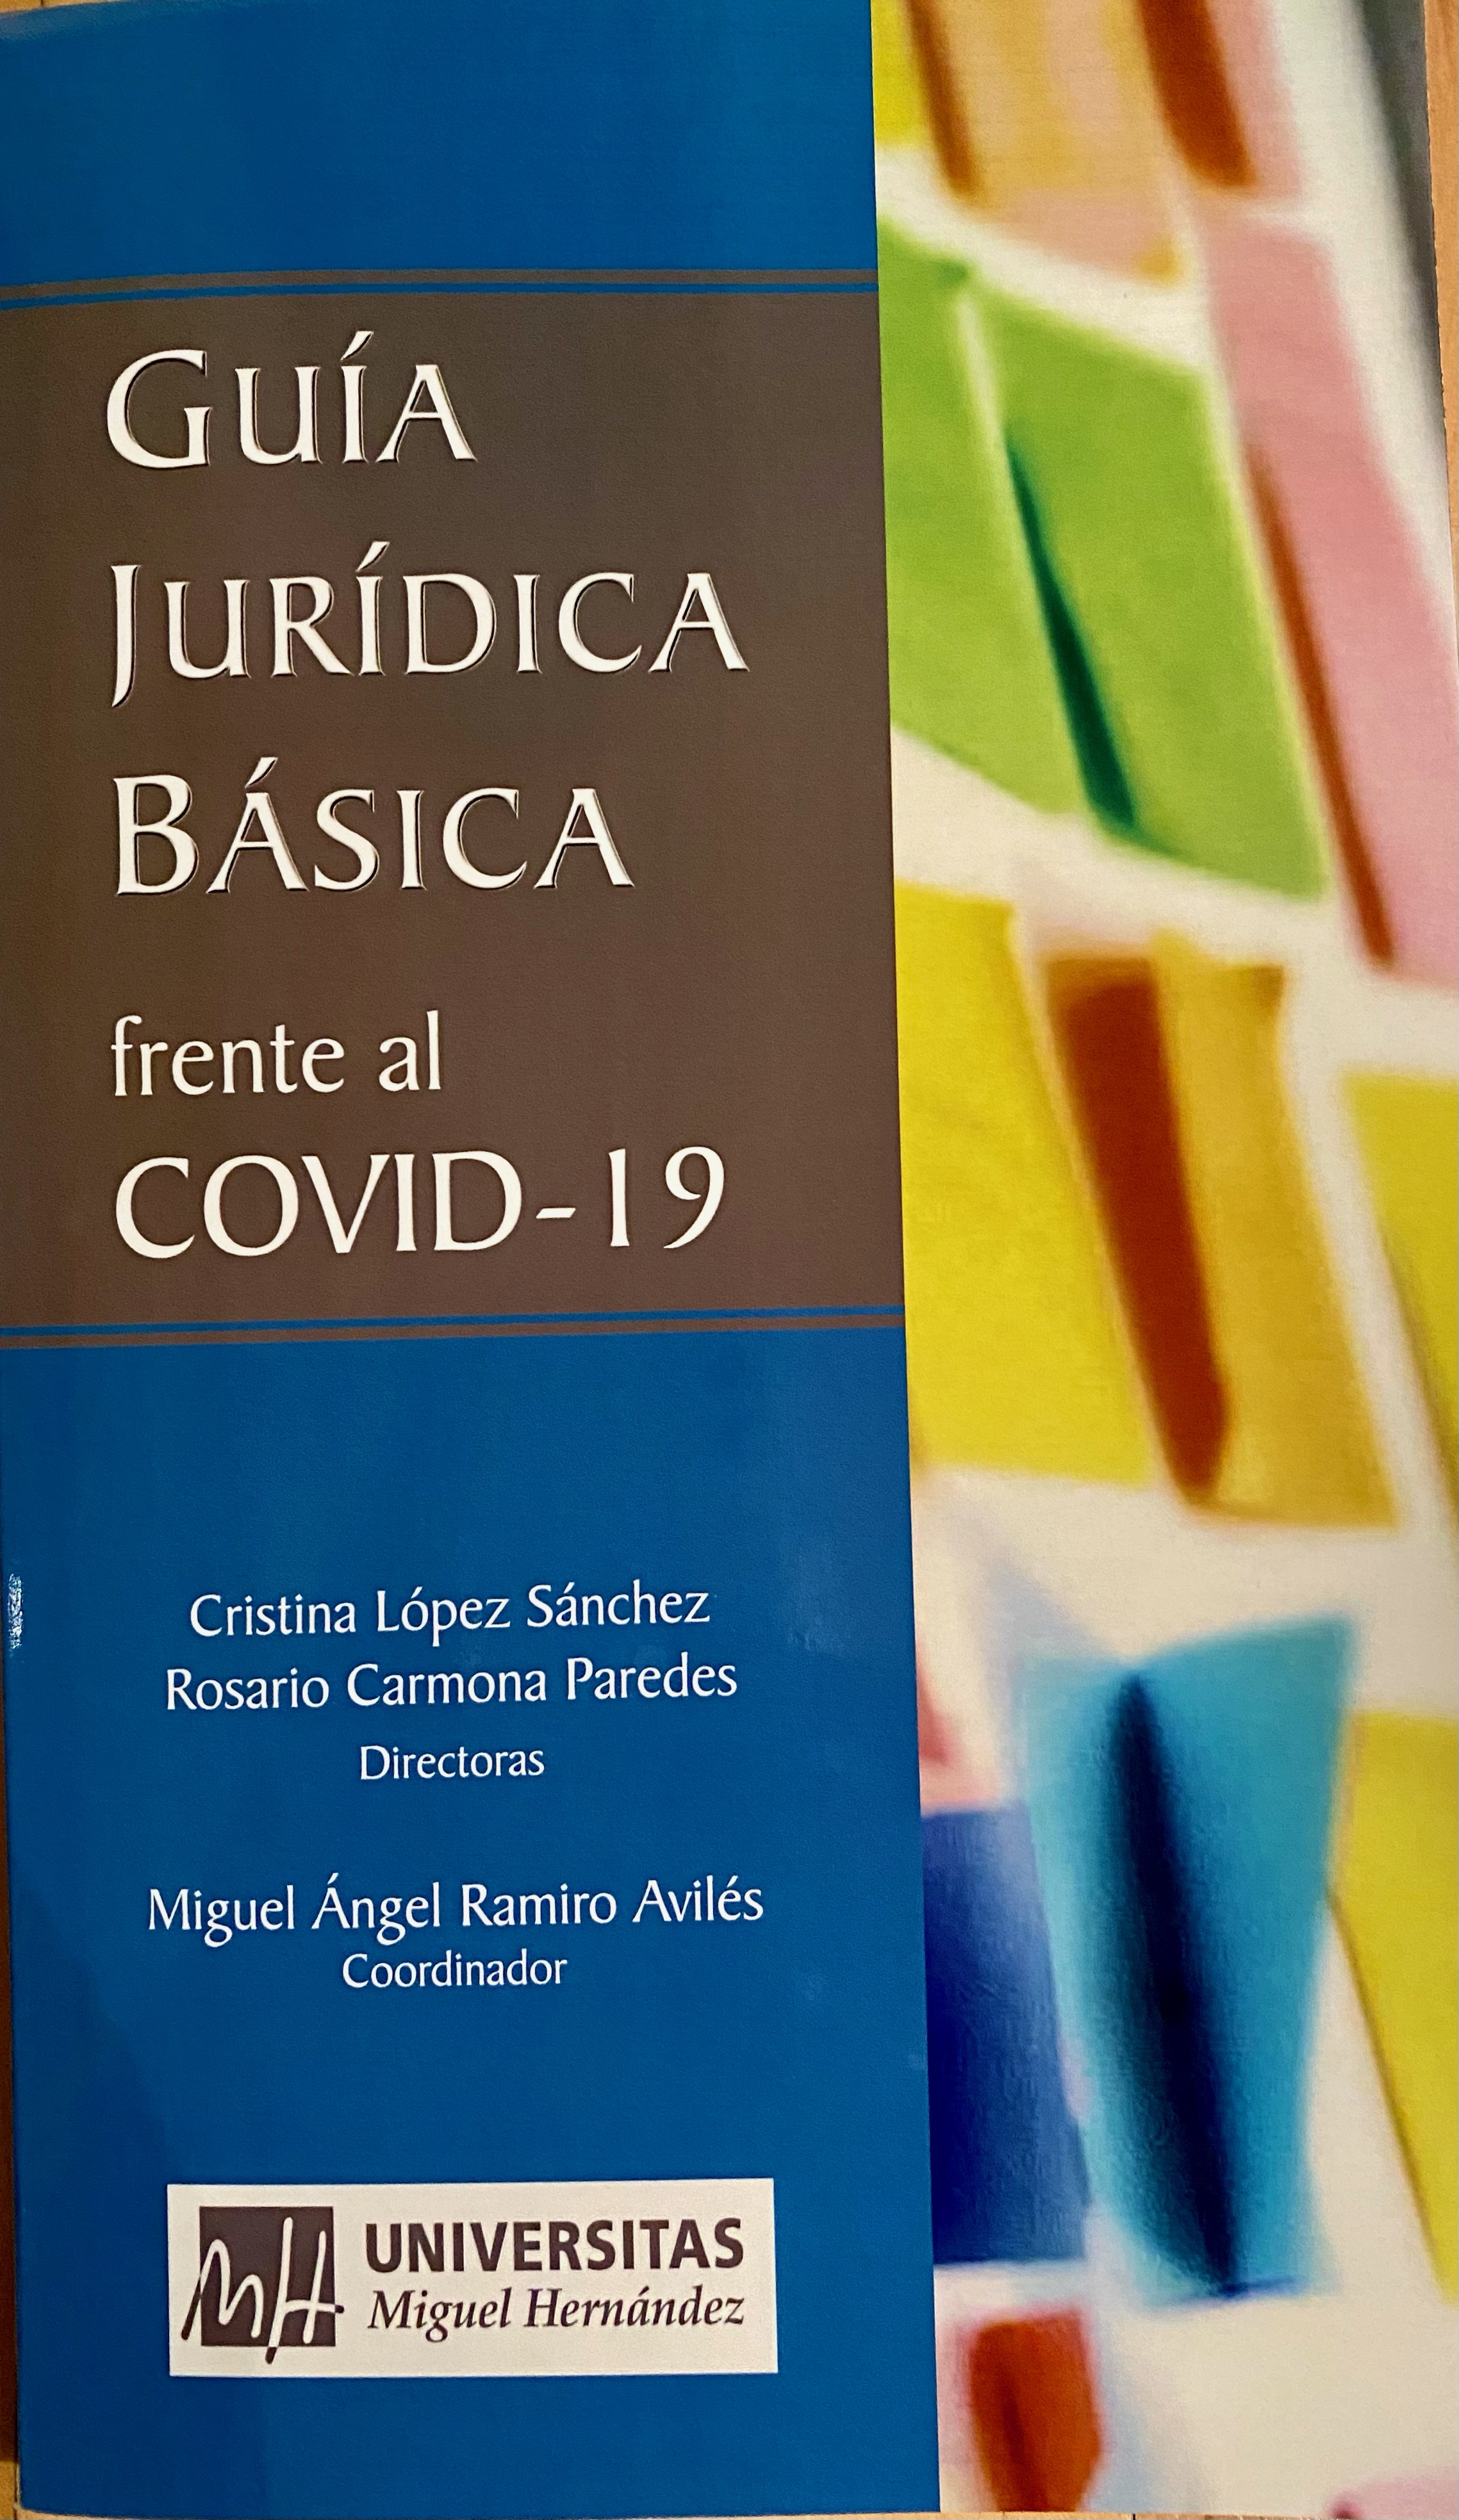 Edición impresa de la Guía Jurídica frente al COVID-19